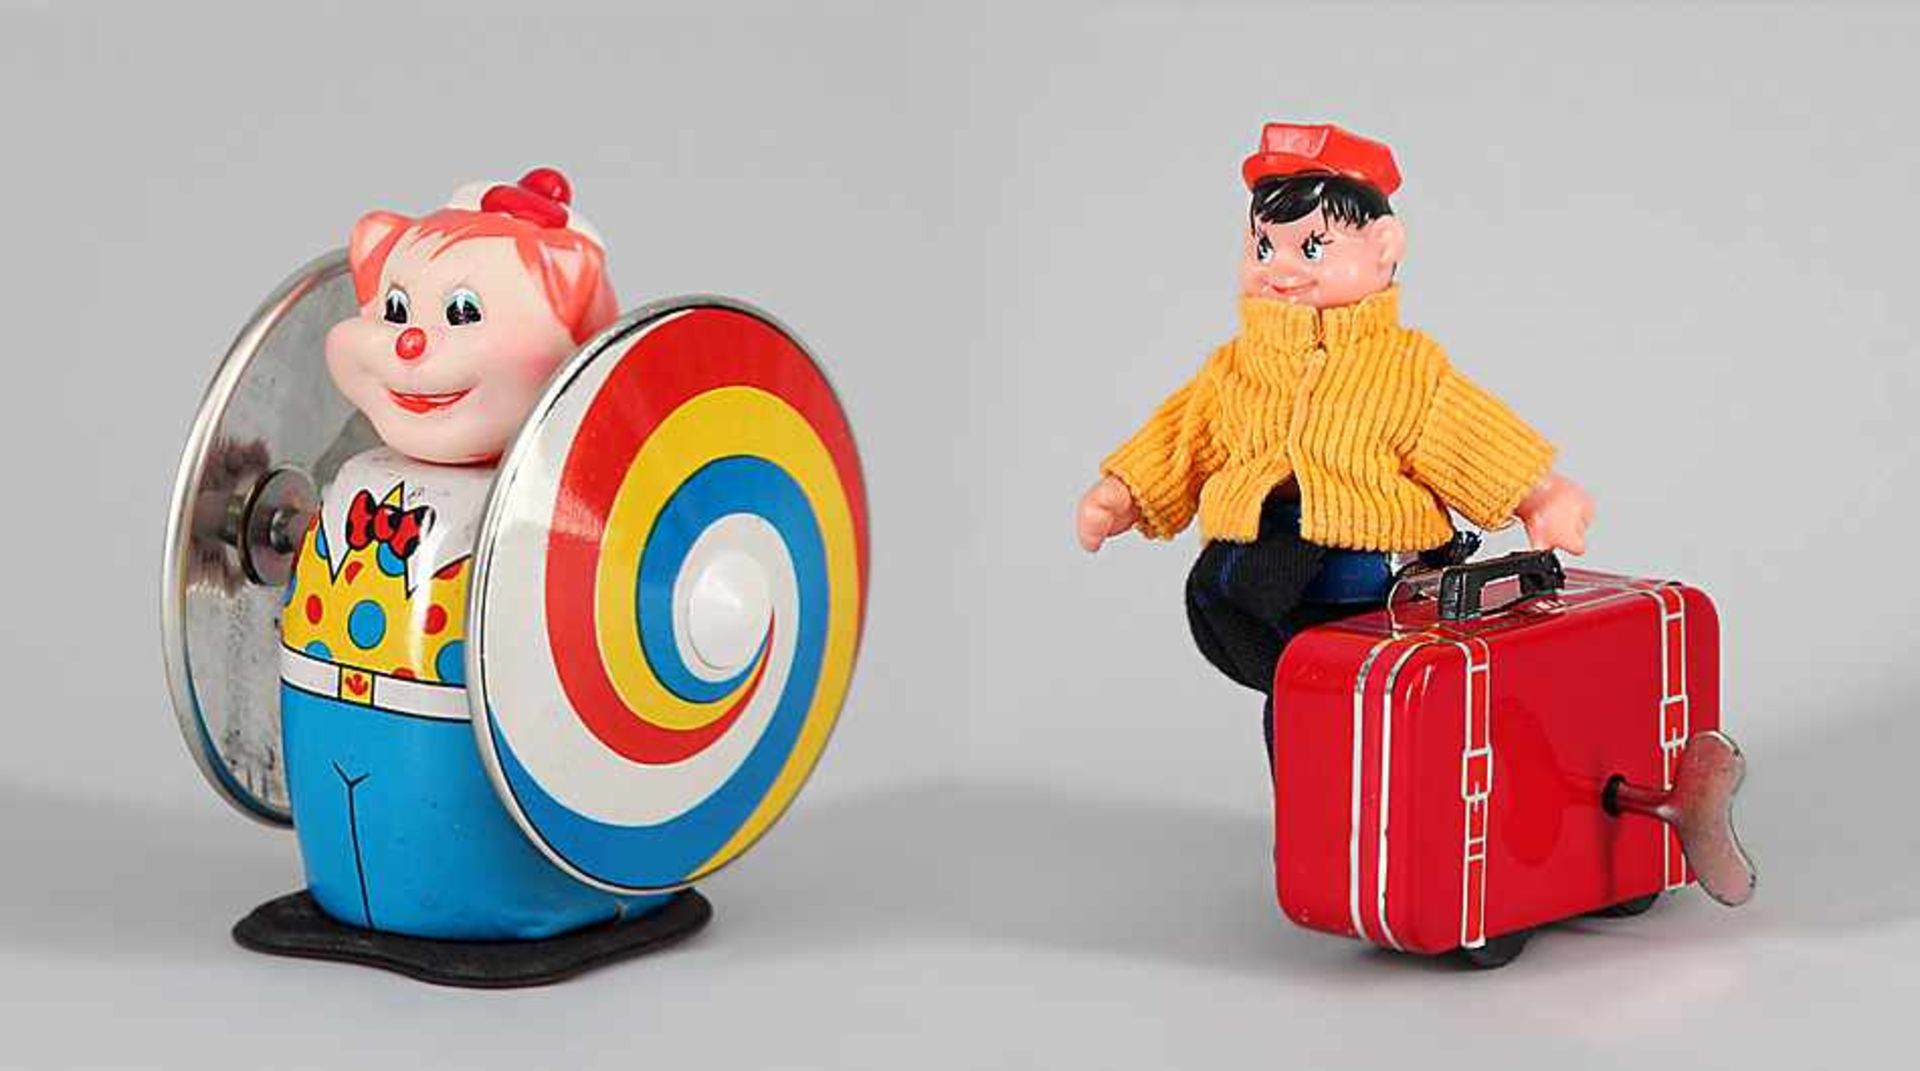 Zwei Puppenfiguren1) Clown mit zwei rotierenden Scheiben. China, wohl 1970er/80er Jahre.